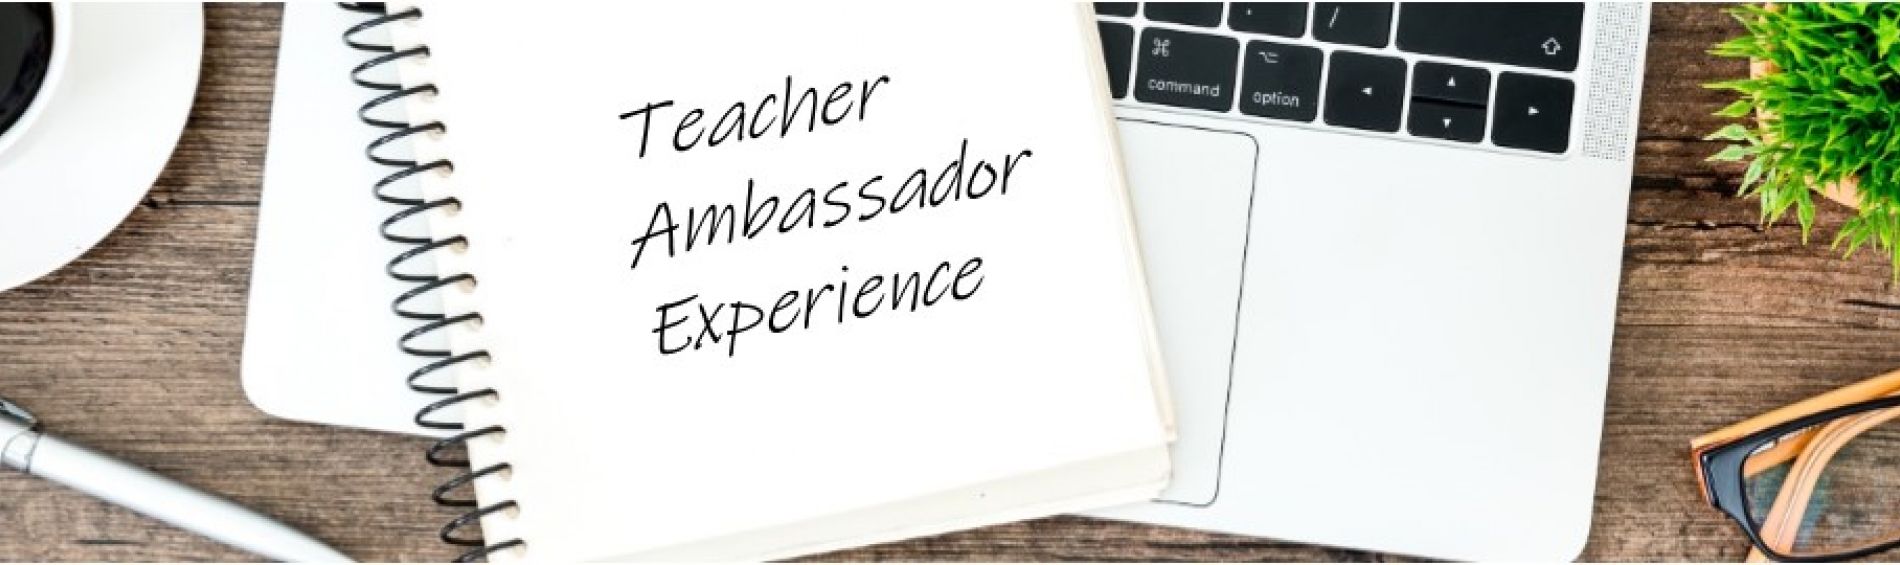 Series Teacher Ambassador